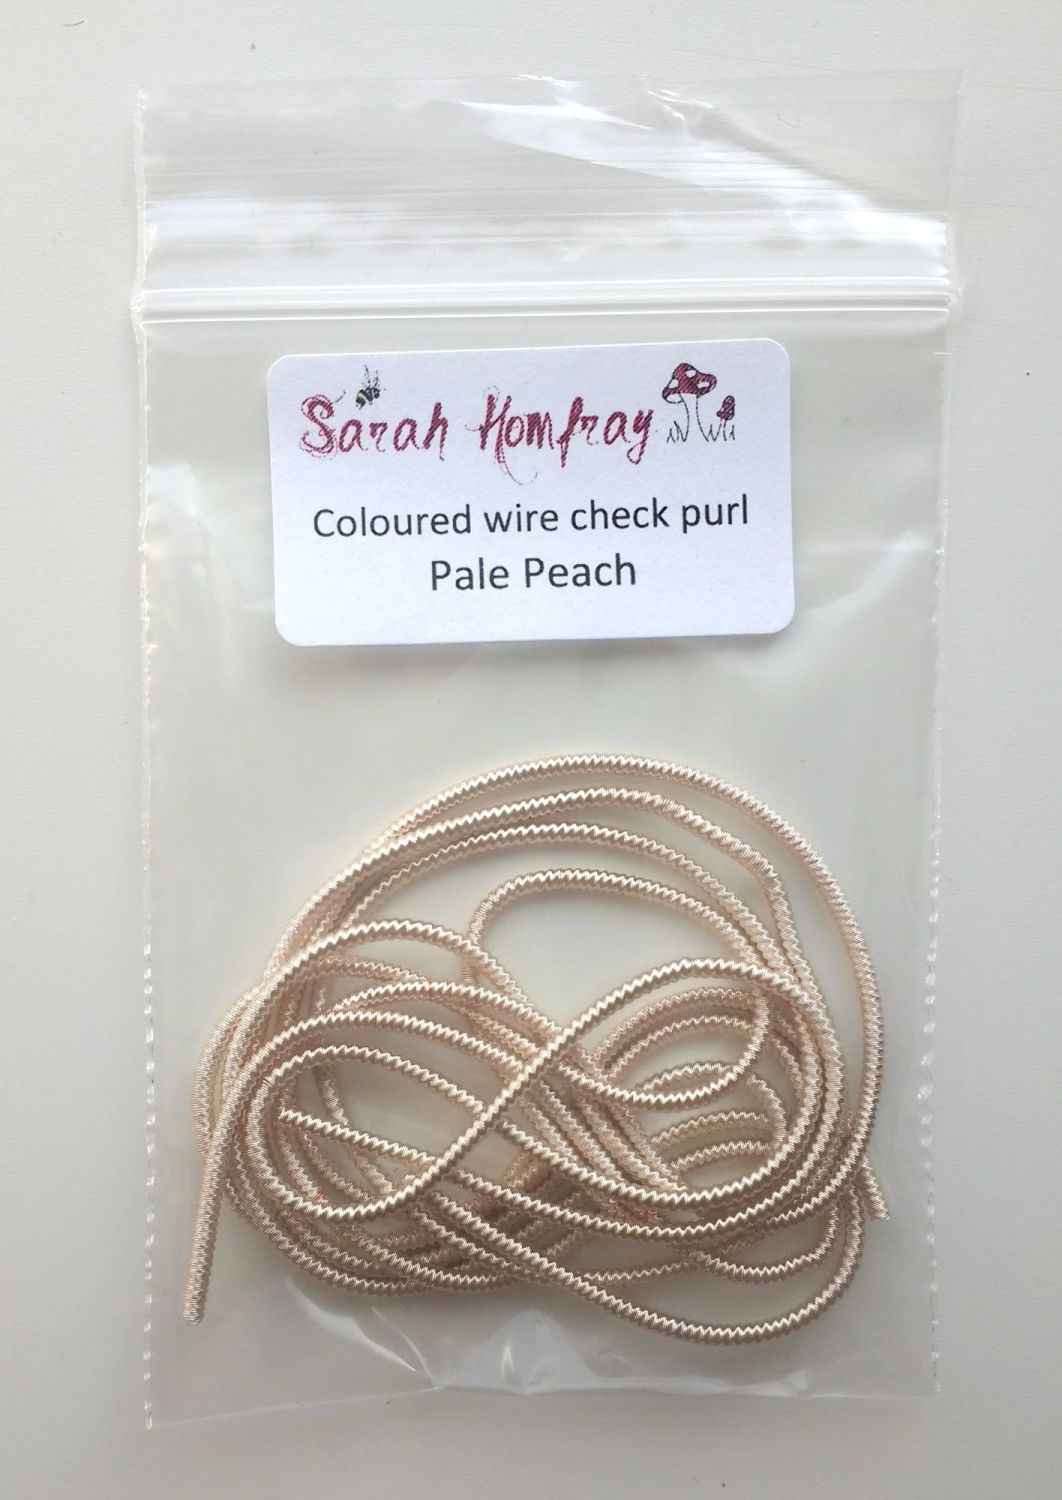 NEW! Coloured Wire check purl no.6 - Pale Peach